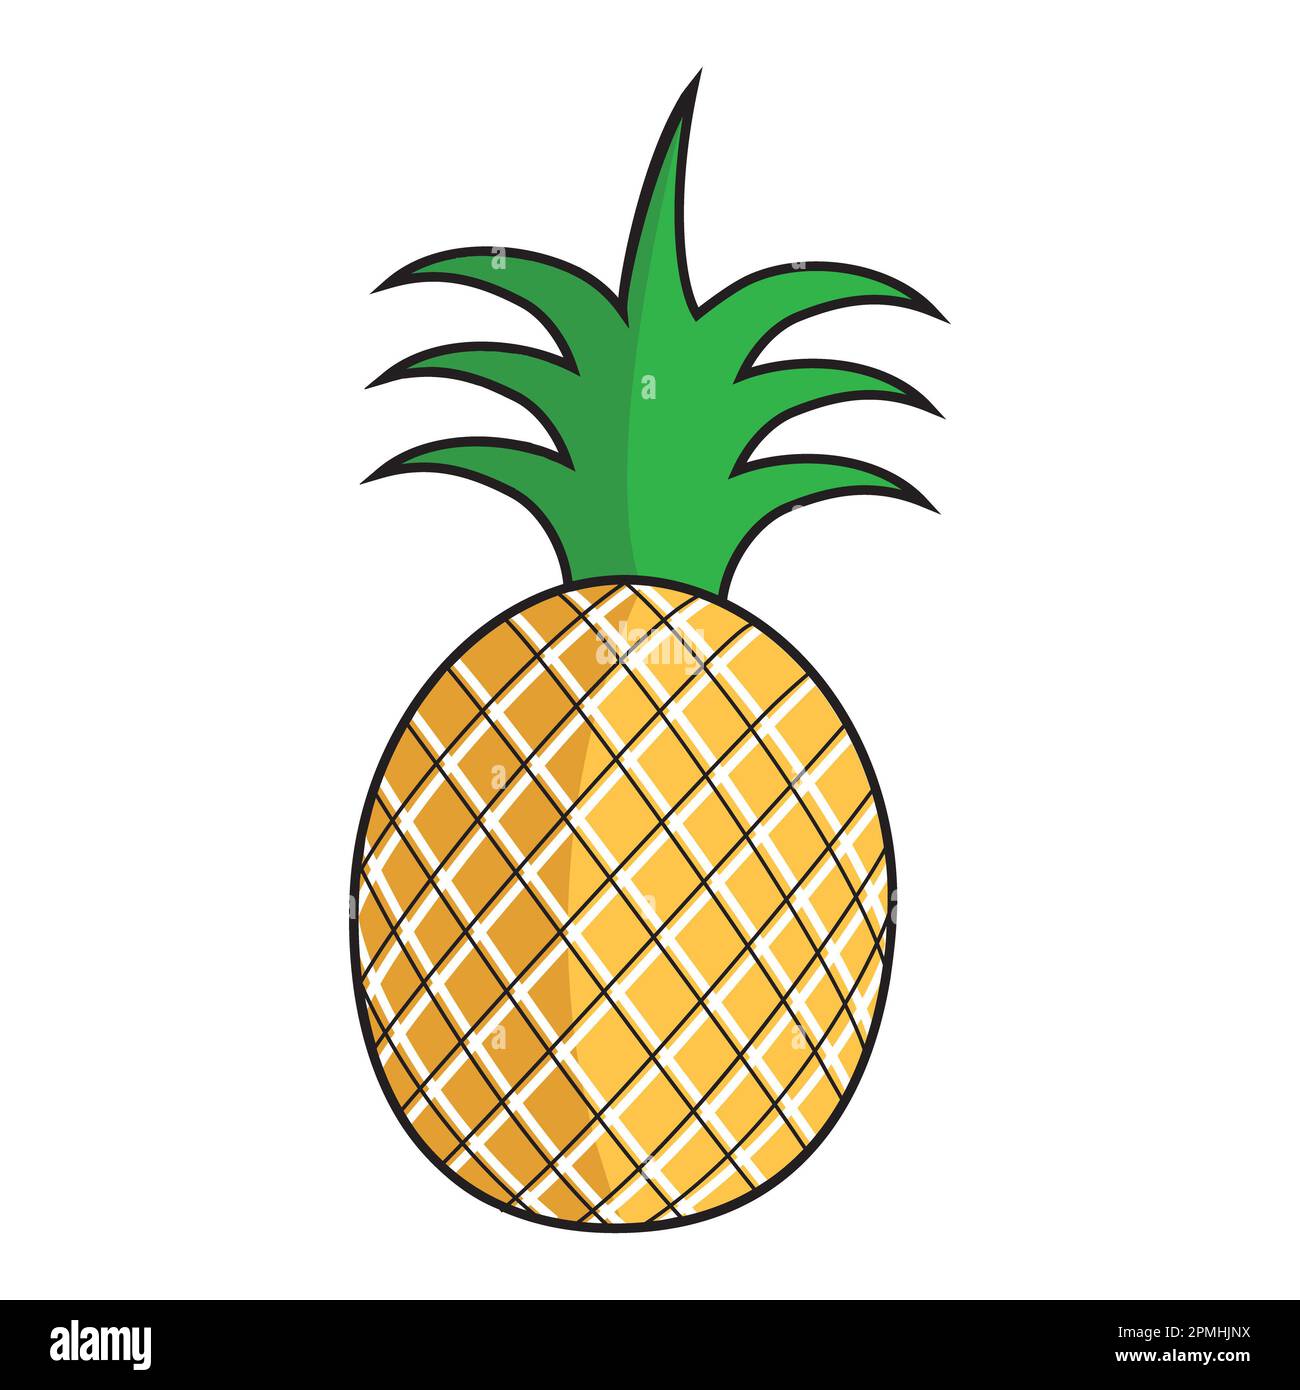 Ich liebe Ananas, dann hol dir diese Ananaskunst für deine Sommerprojekte. Diese Sommerfrucht, die von allen geliebt wird. Ananas-Design isoliert auf weißem Hintergrund Stockfoto